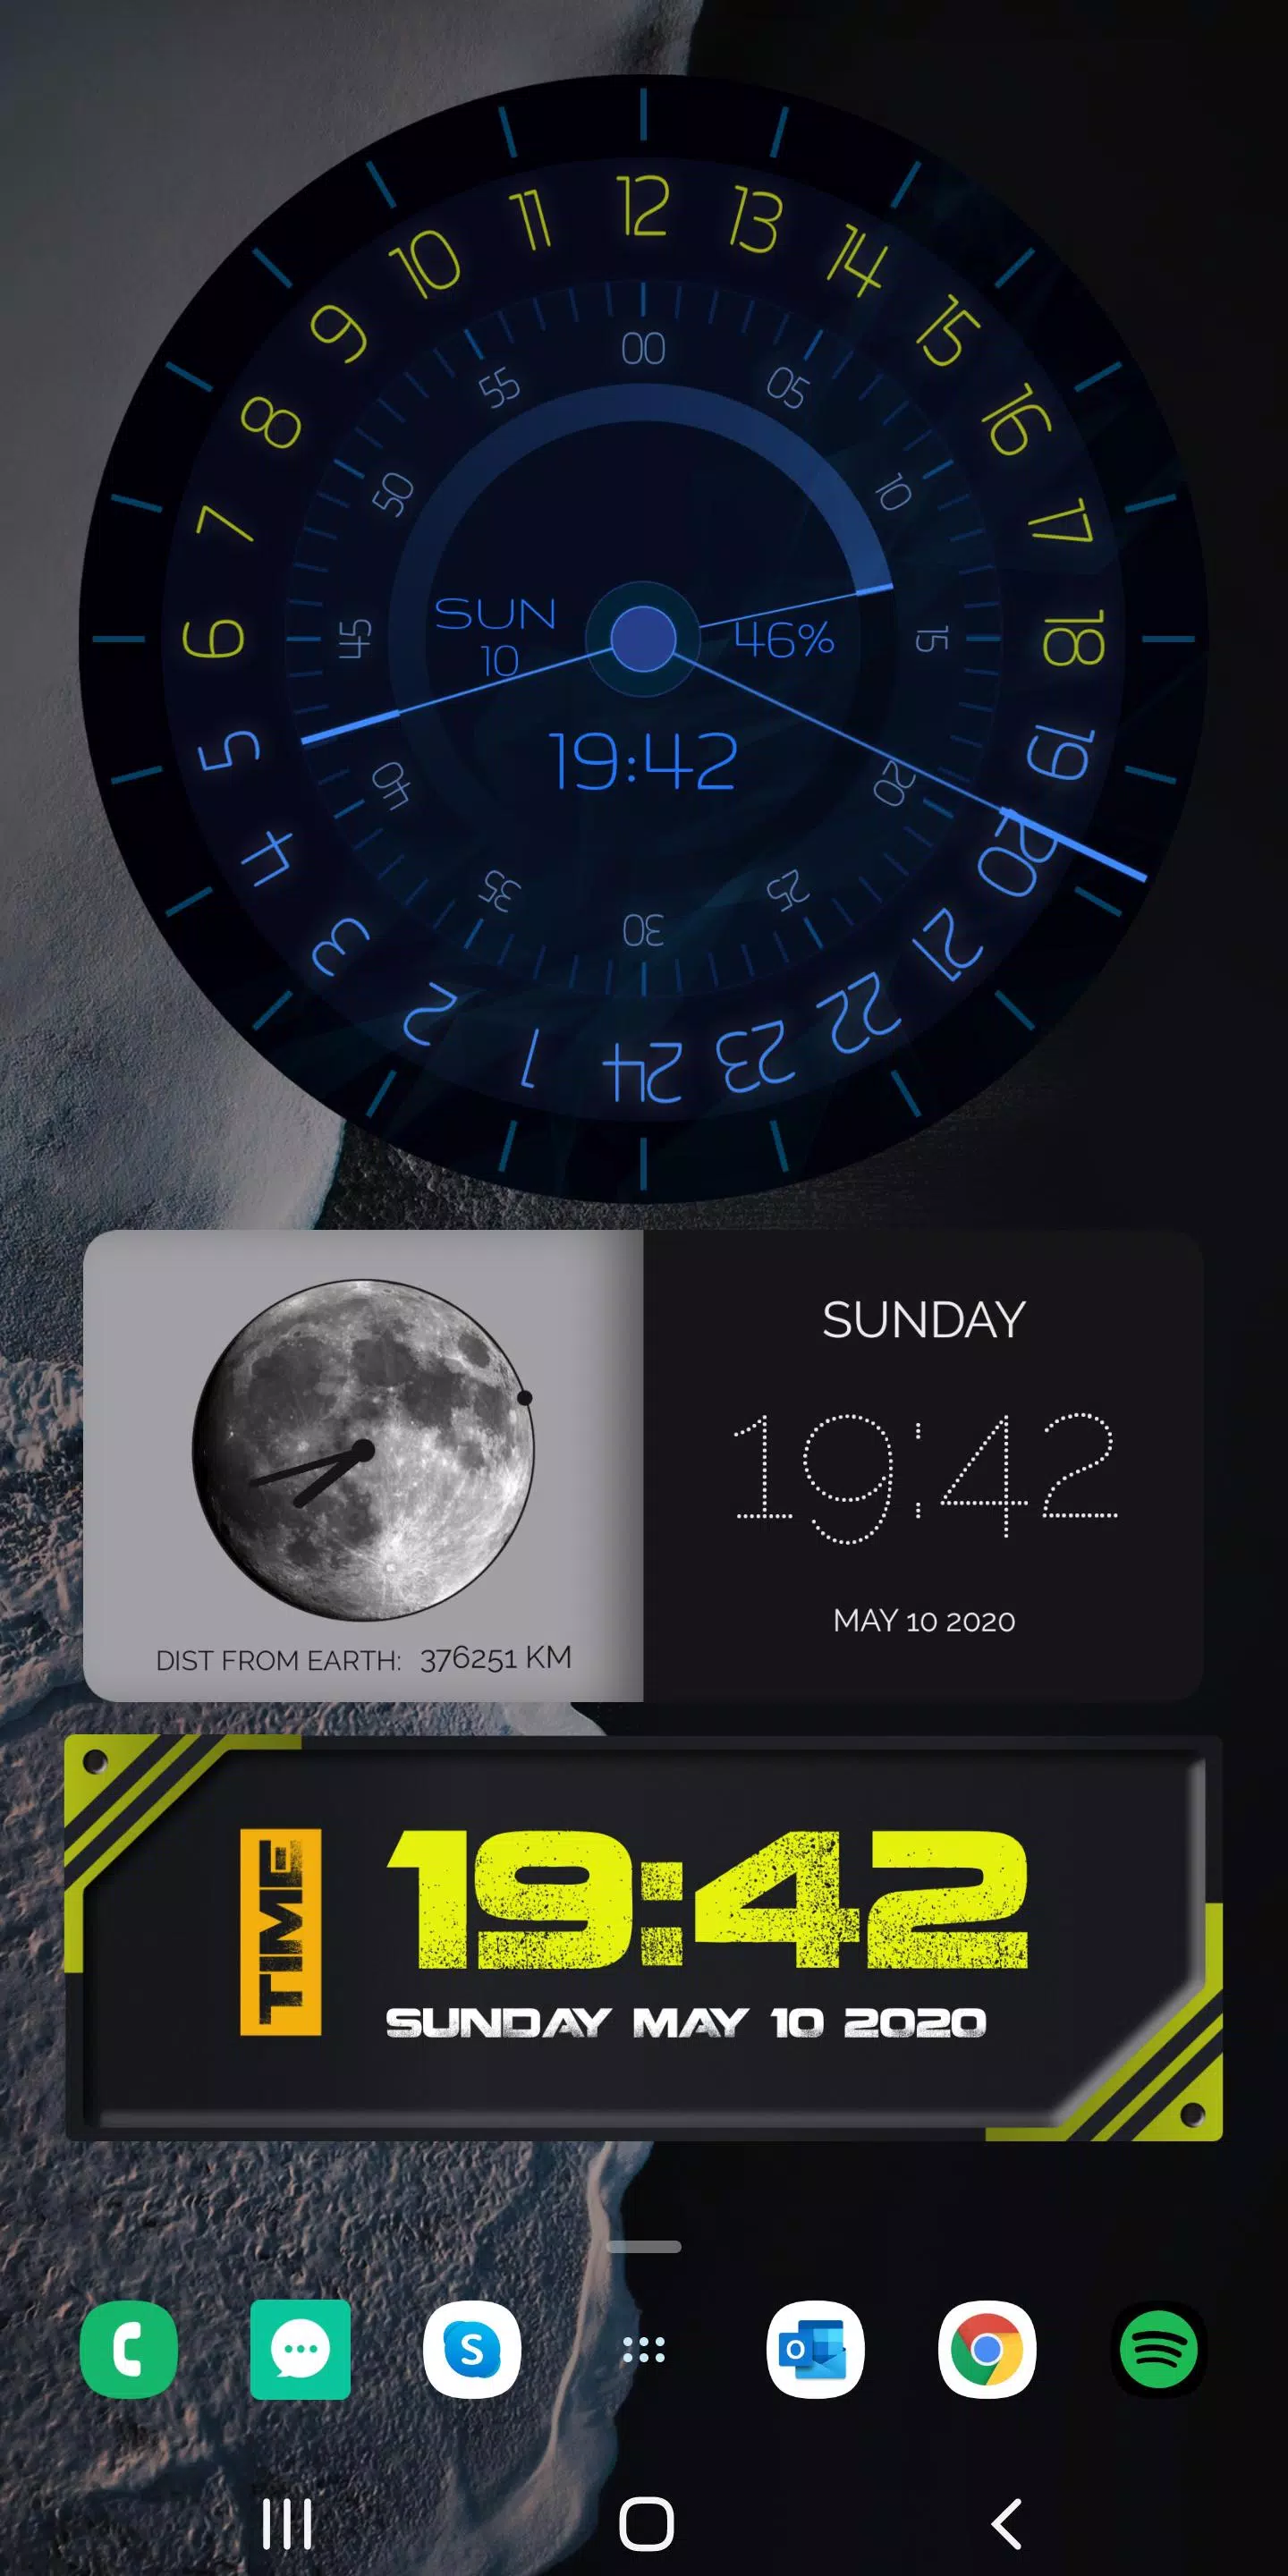 Descarga de APK de Widgets de reloj de Android para Android